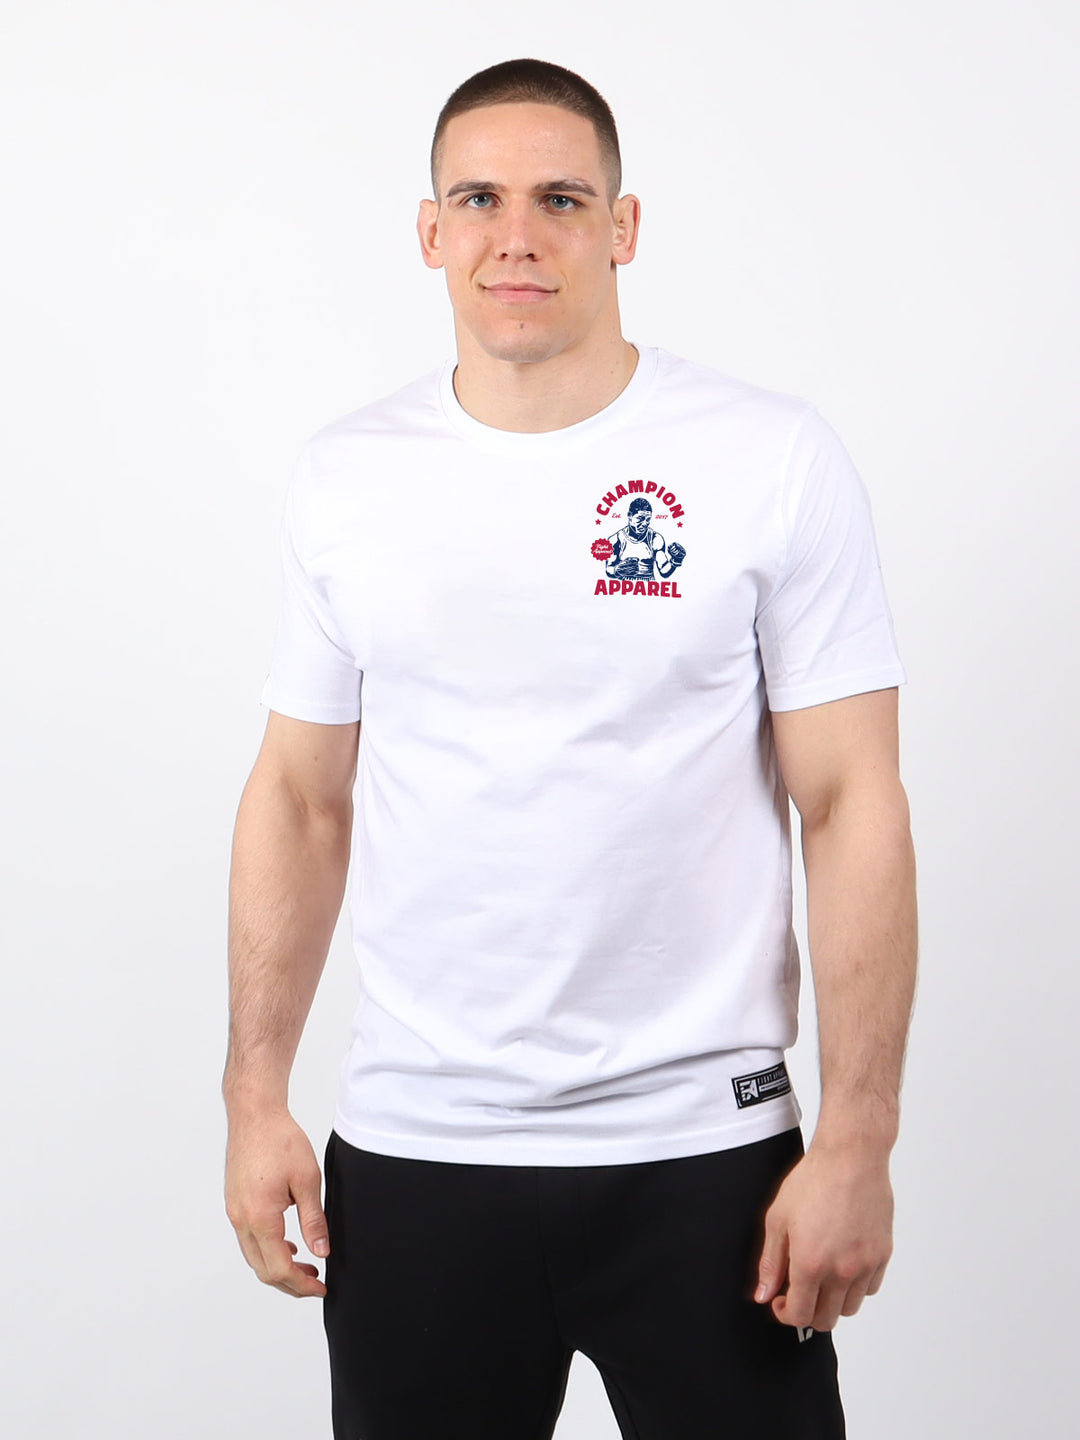 FA - Champion - V4.0 Shirt Fight - Apparel Store – White